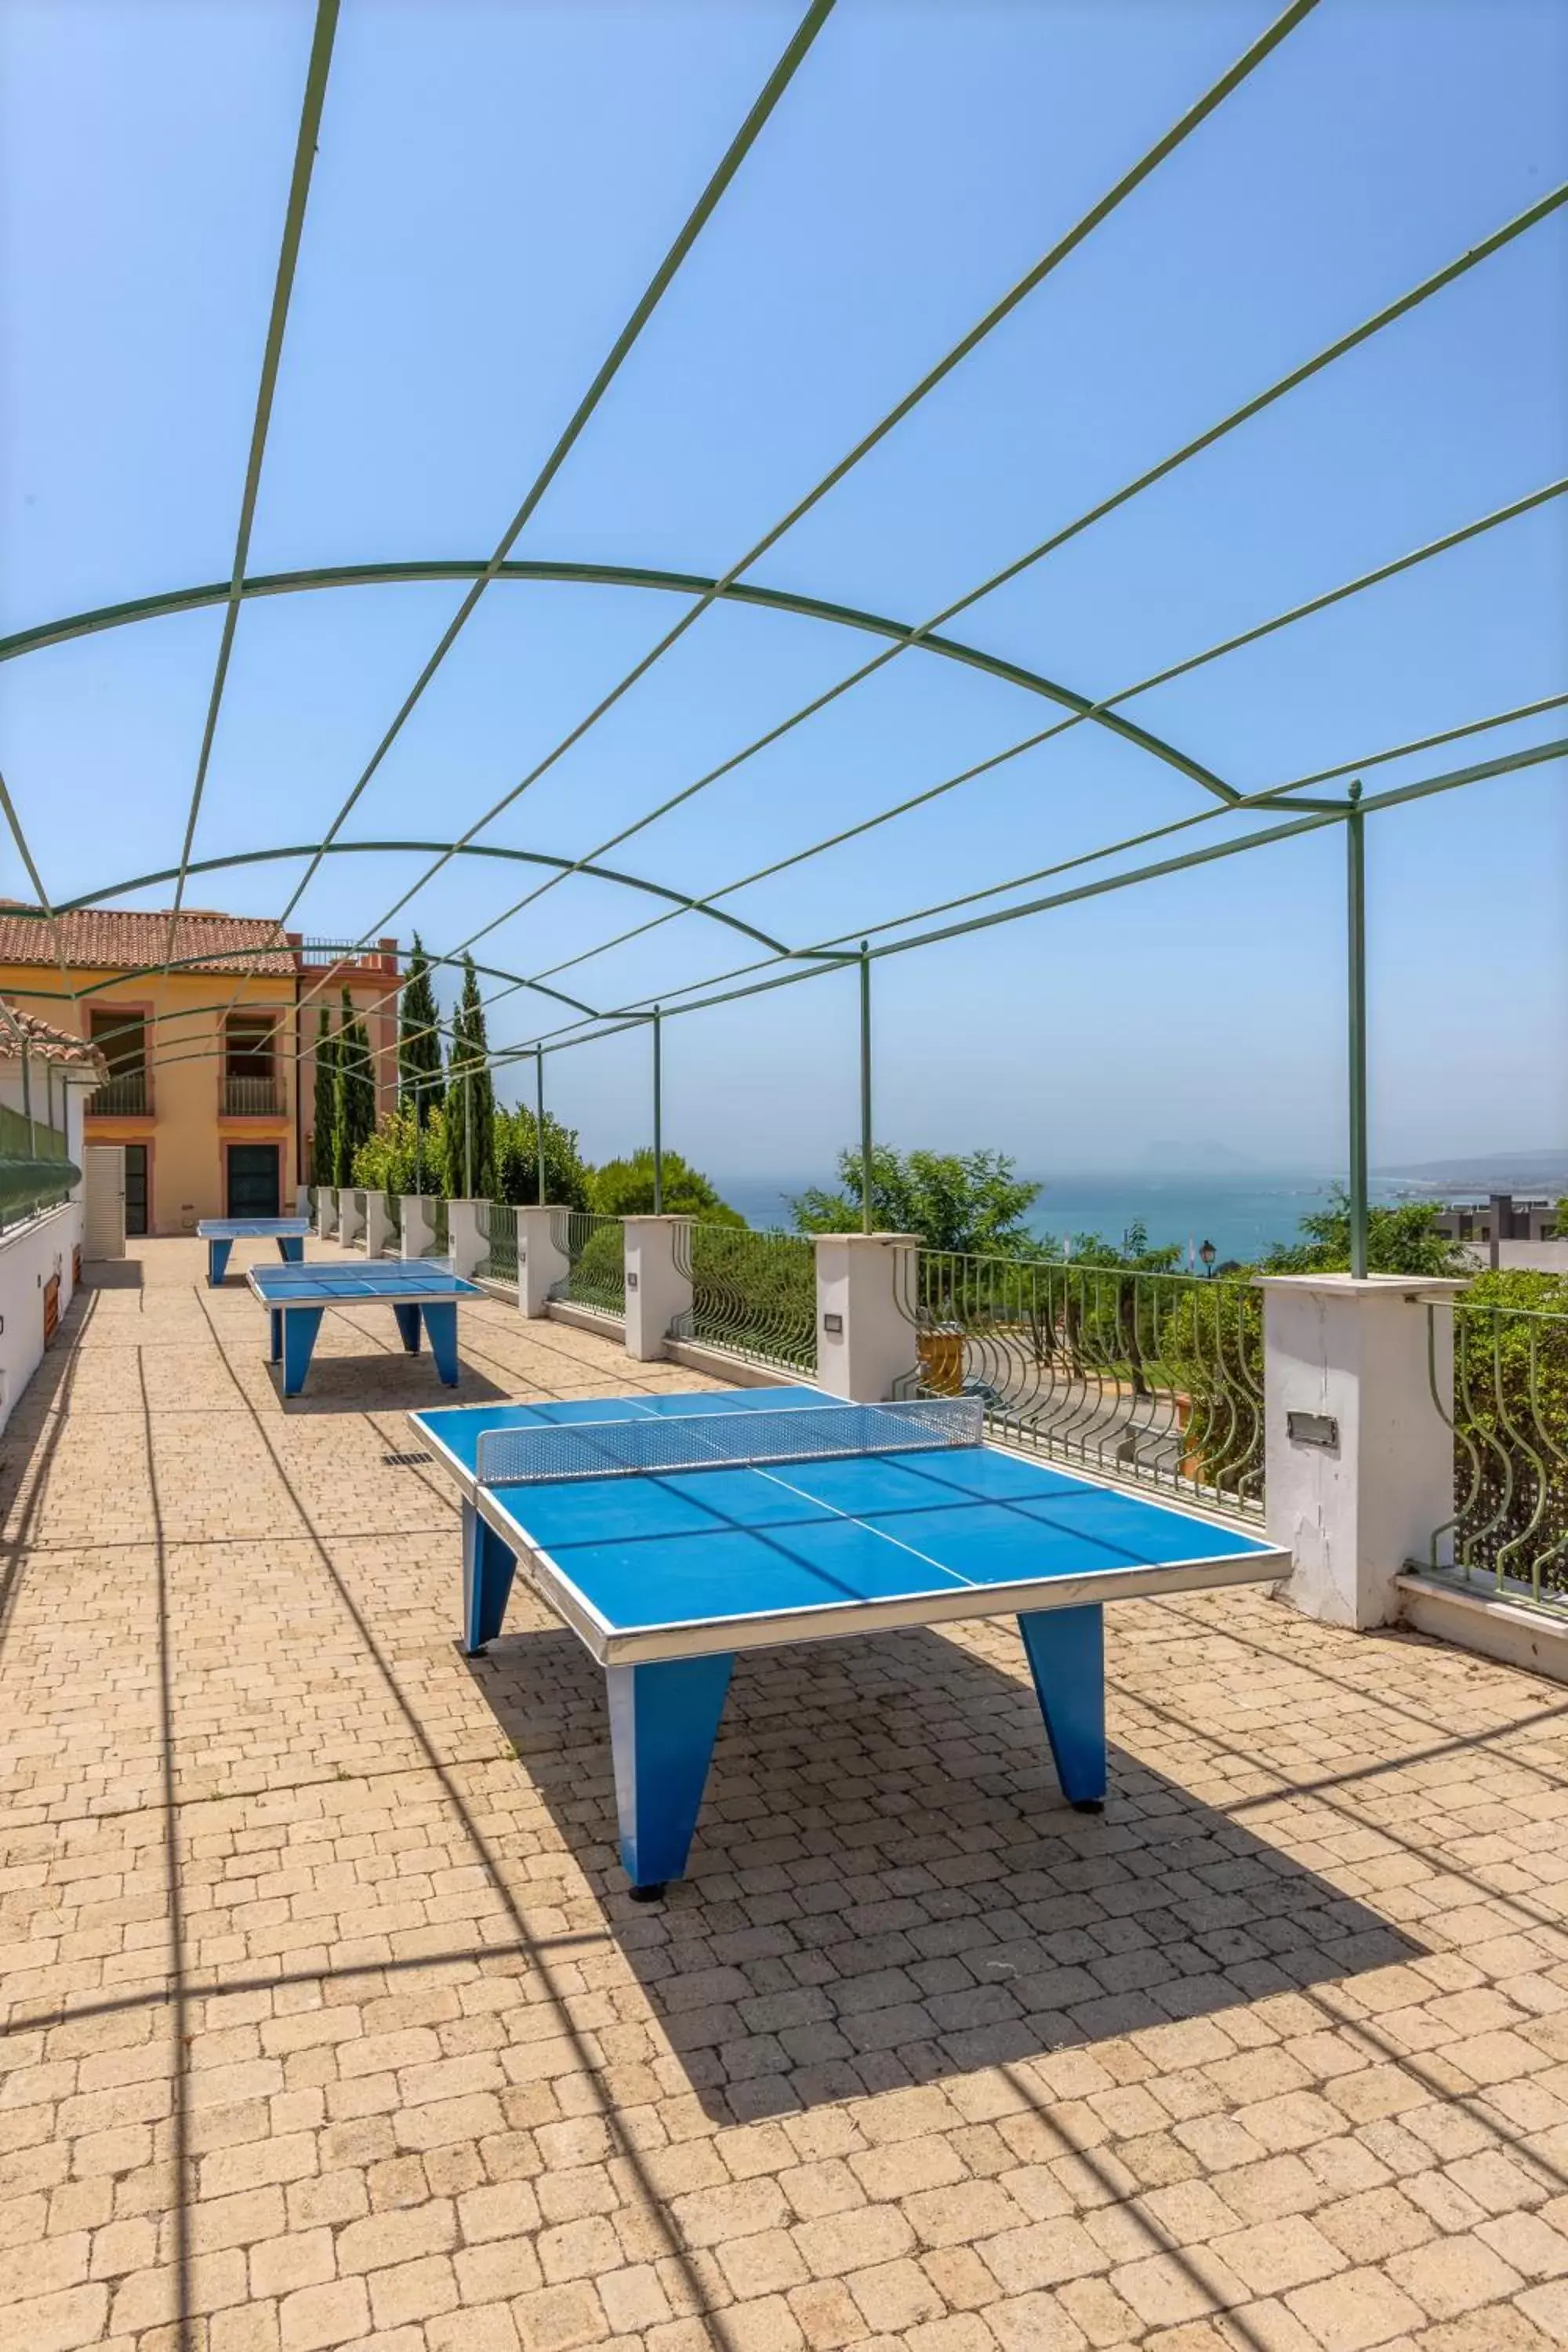 Table Tennis in Pierre & Vacances Resort Terrazas Costa del Sol